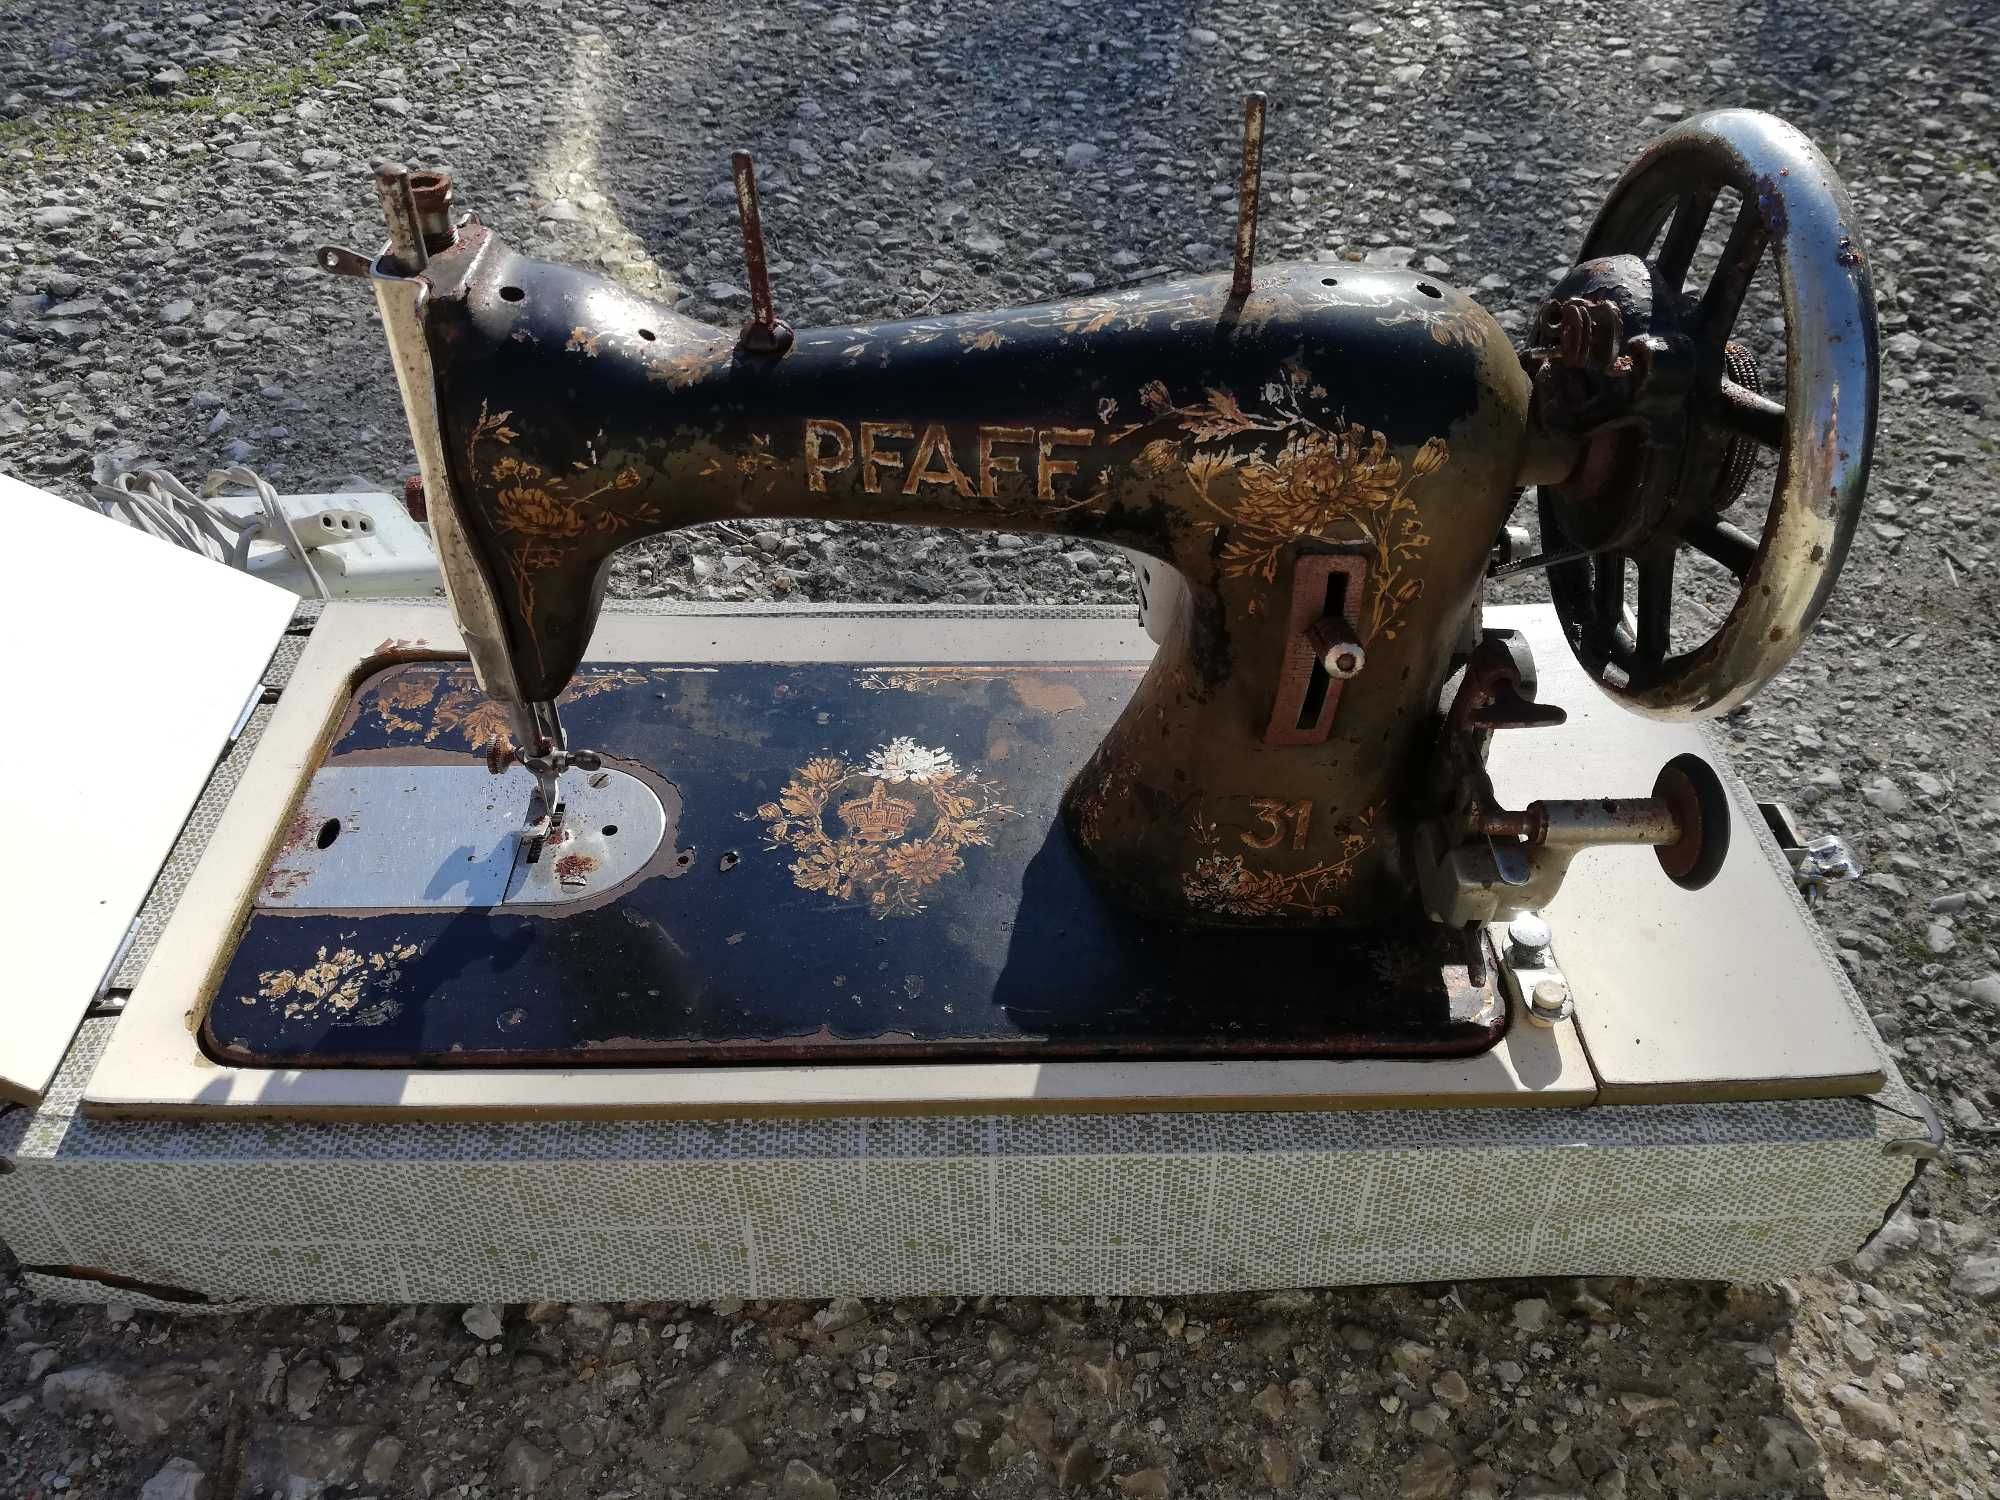 Maquina de costura Pfaff. Antiga. Vintage. Portátil.